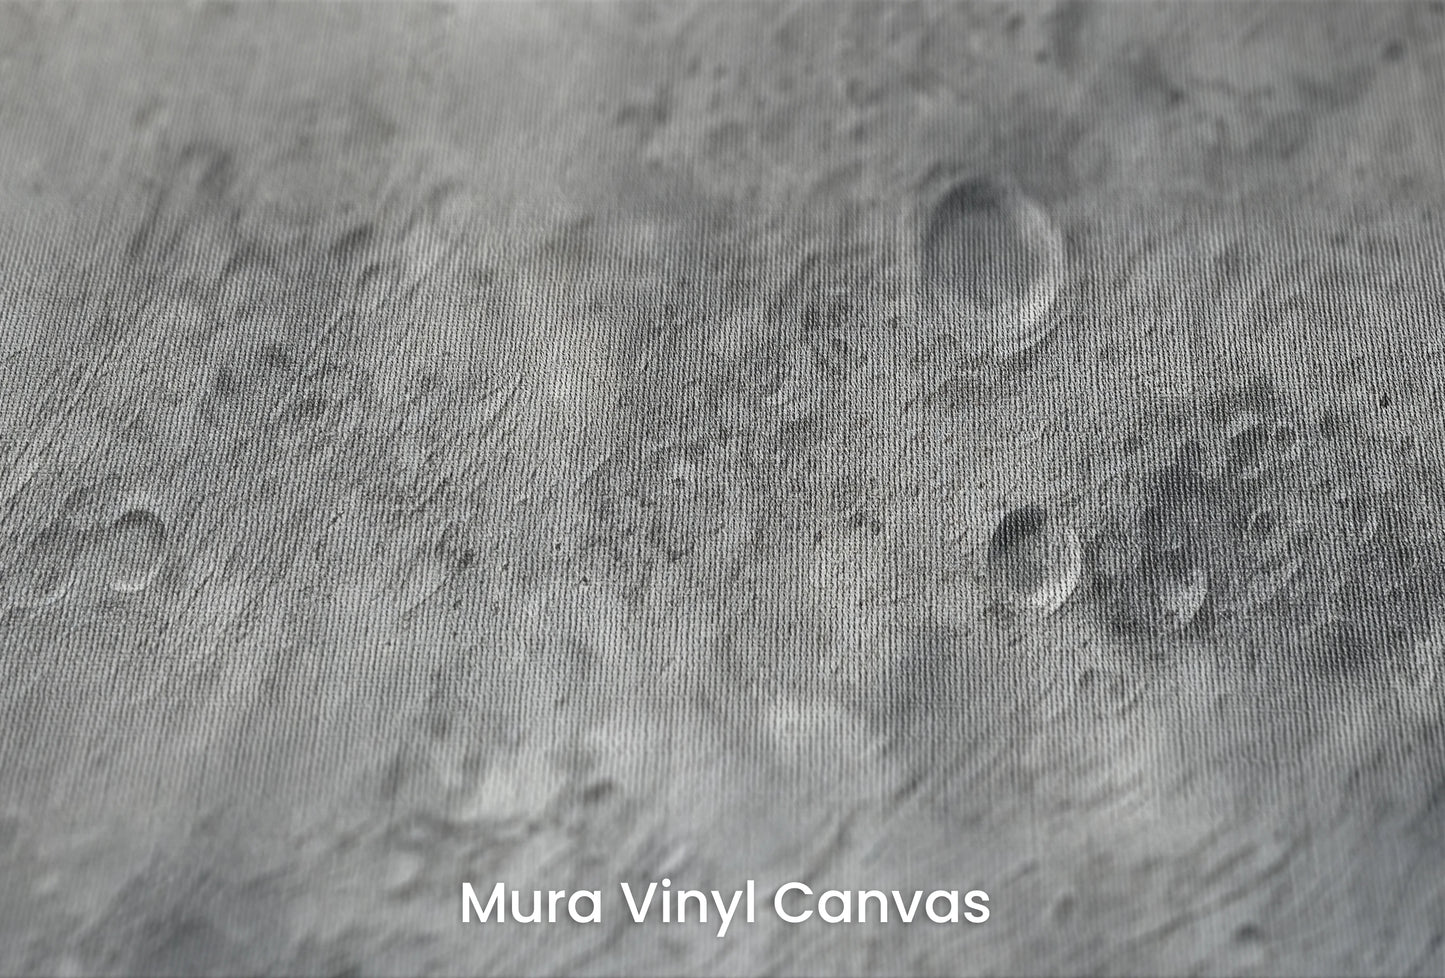 Zbliżenie na artystyczną fototapetę o nazwie Lunar Majesty na podłożu Mura Vinyl Canvas - faktura naturalnego płótna.